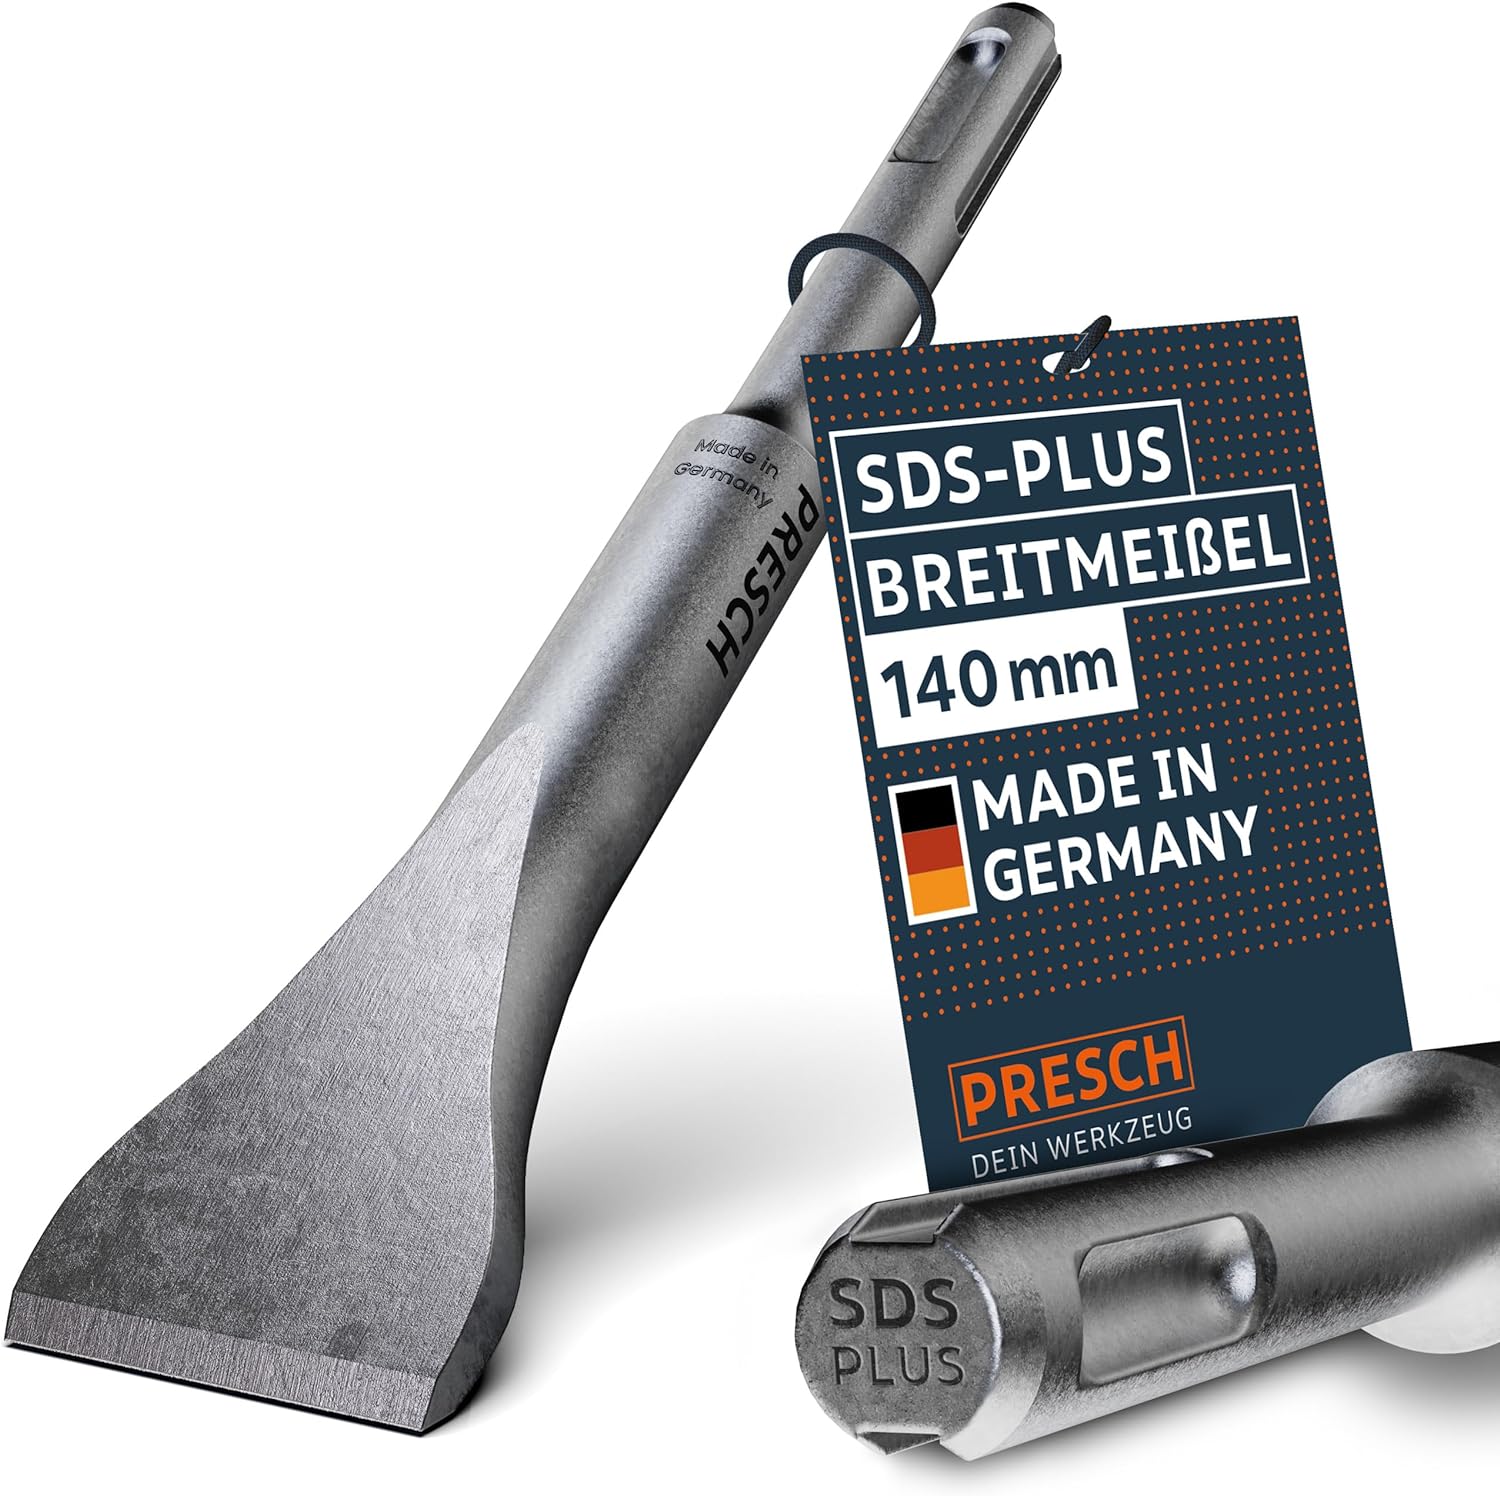 Presch SDS-Plus Breitmeißel 140 mm, Flachmeißel und Meißelwerkzeug 'Made in Germany'.